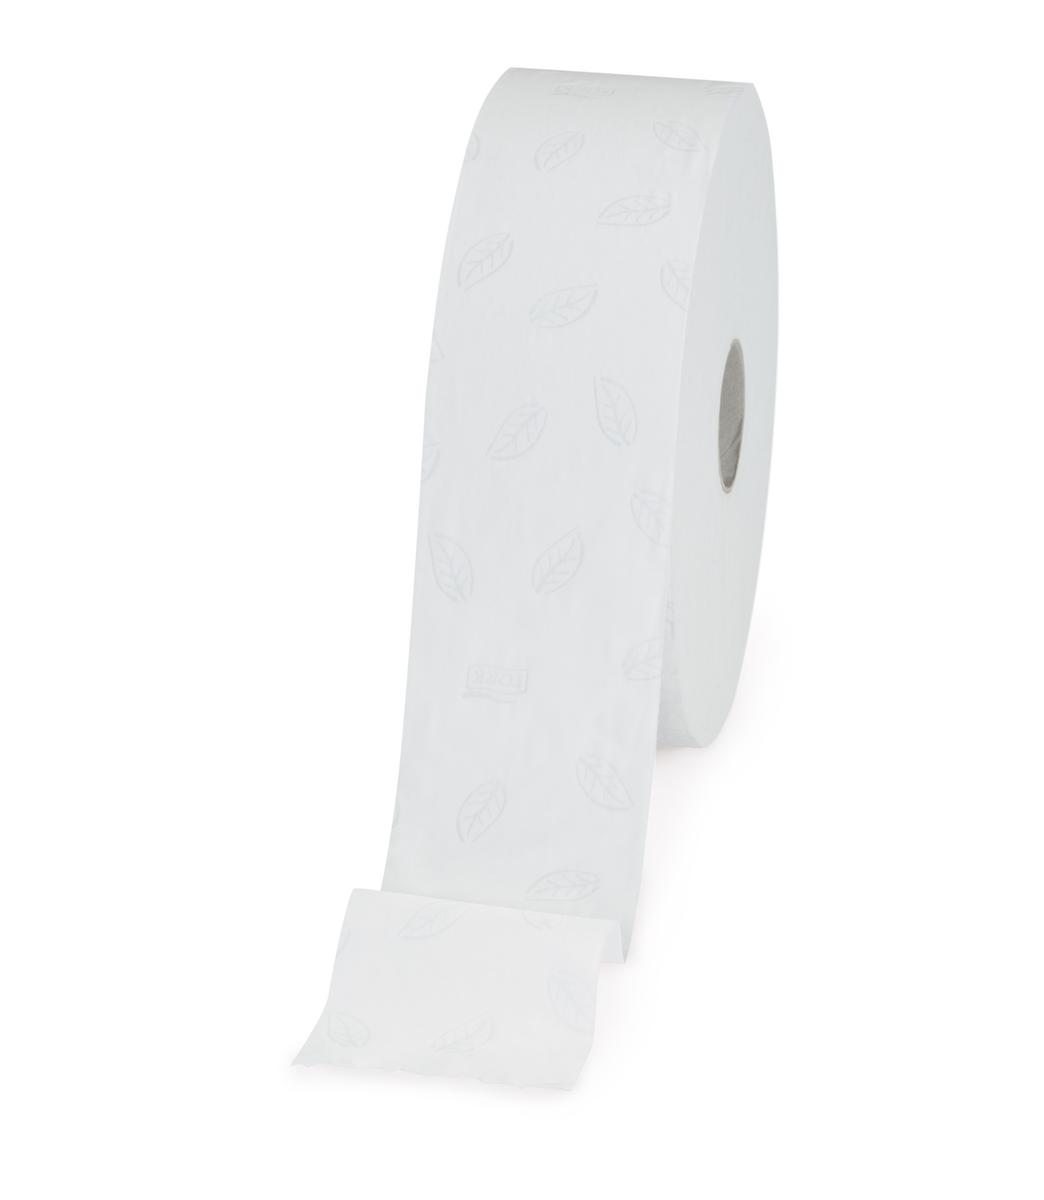 Tork Grands rouleaux de papier toilette, 2 couches, Tissue